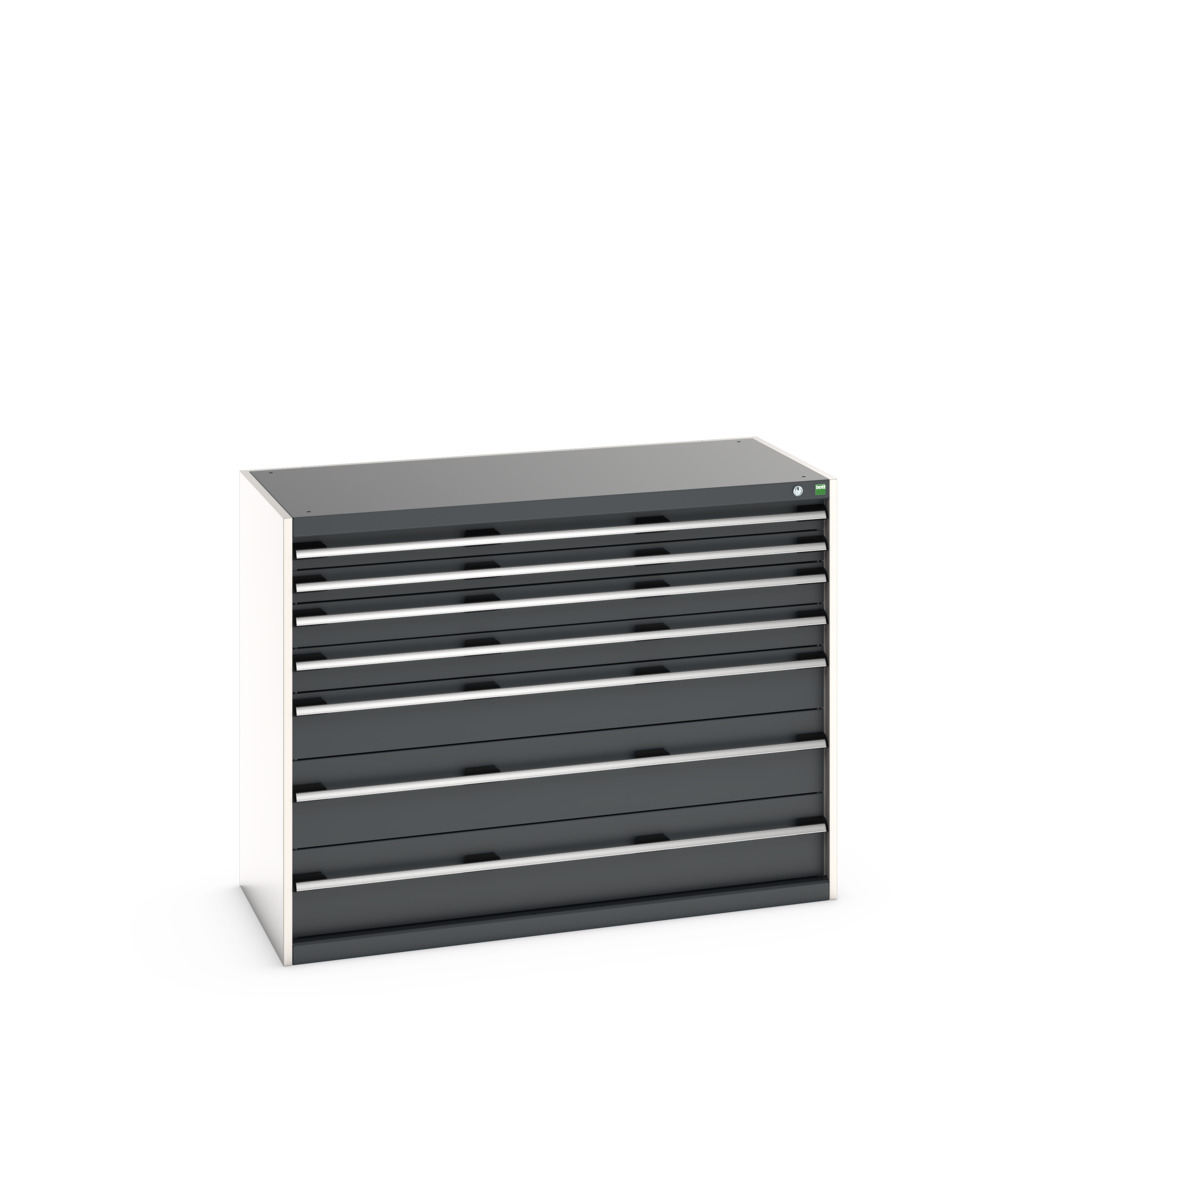 40022125.19V - cubio drawer cabinet